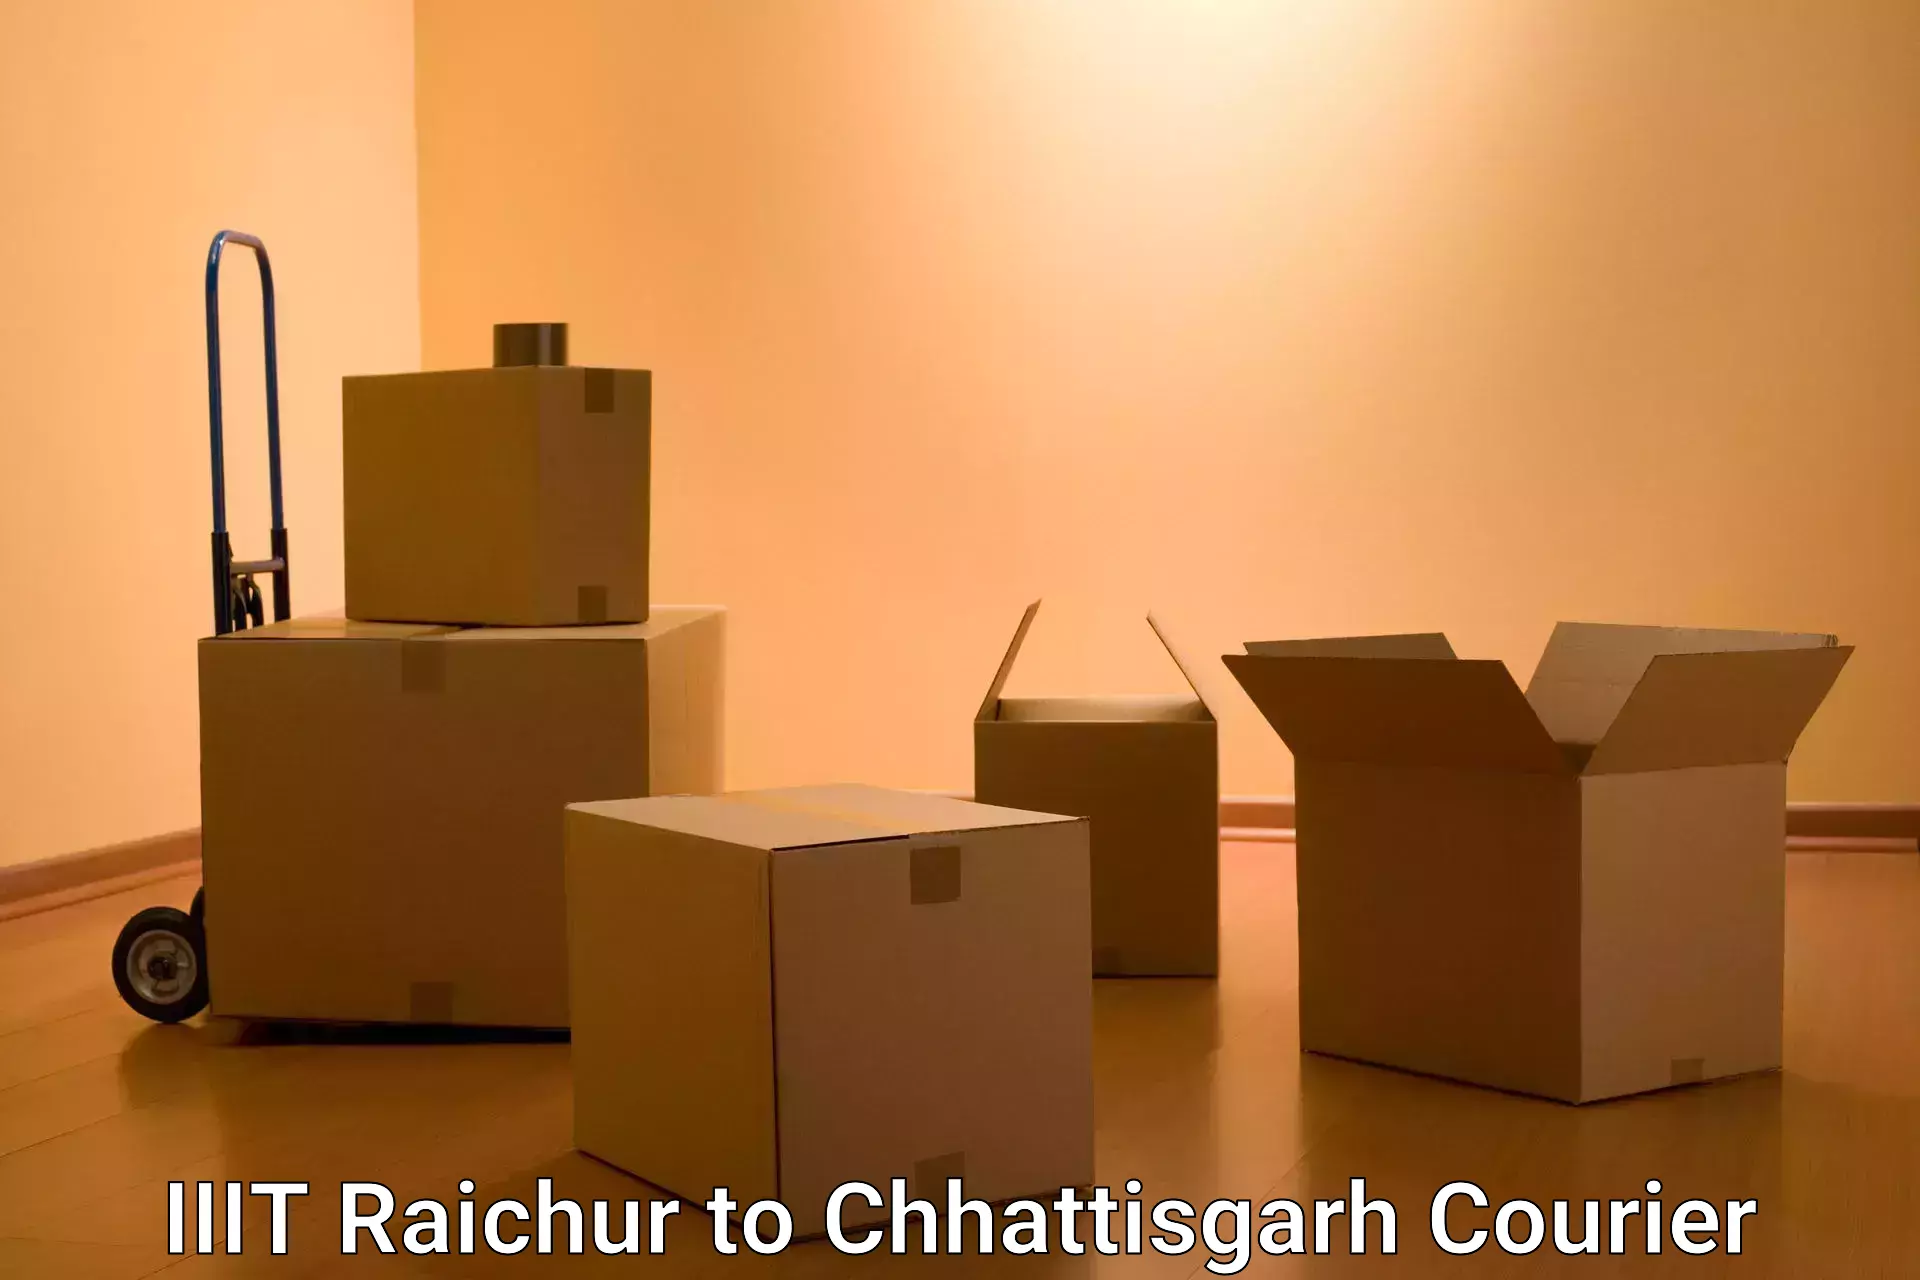 Custom courier packages in IIIT Raichur to Chhattisgarh